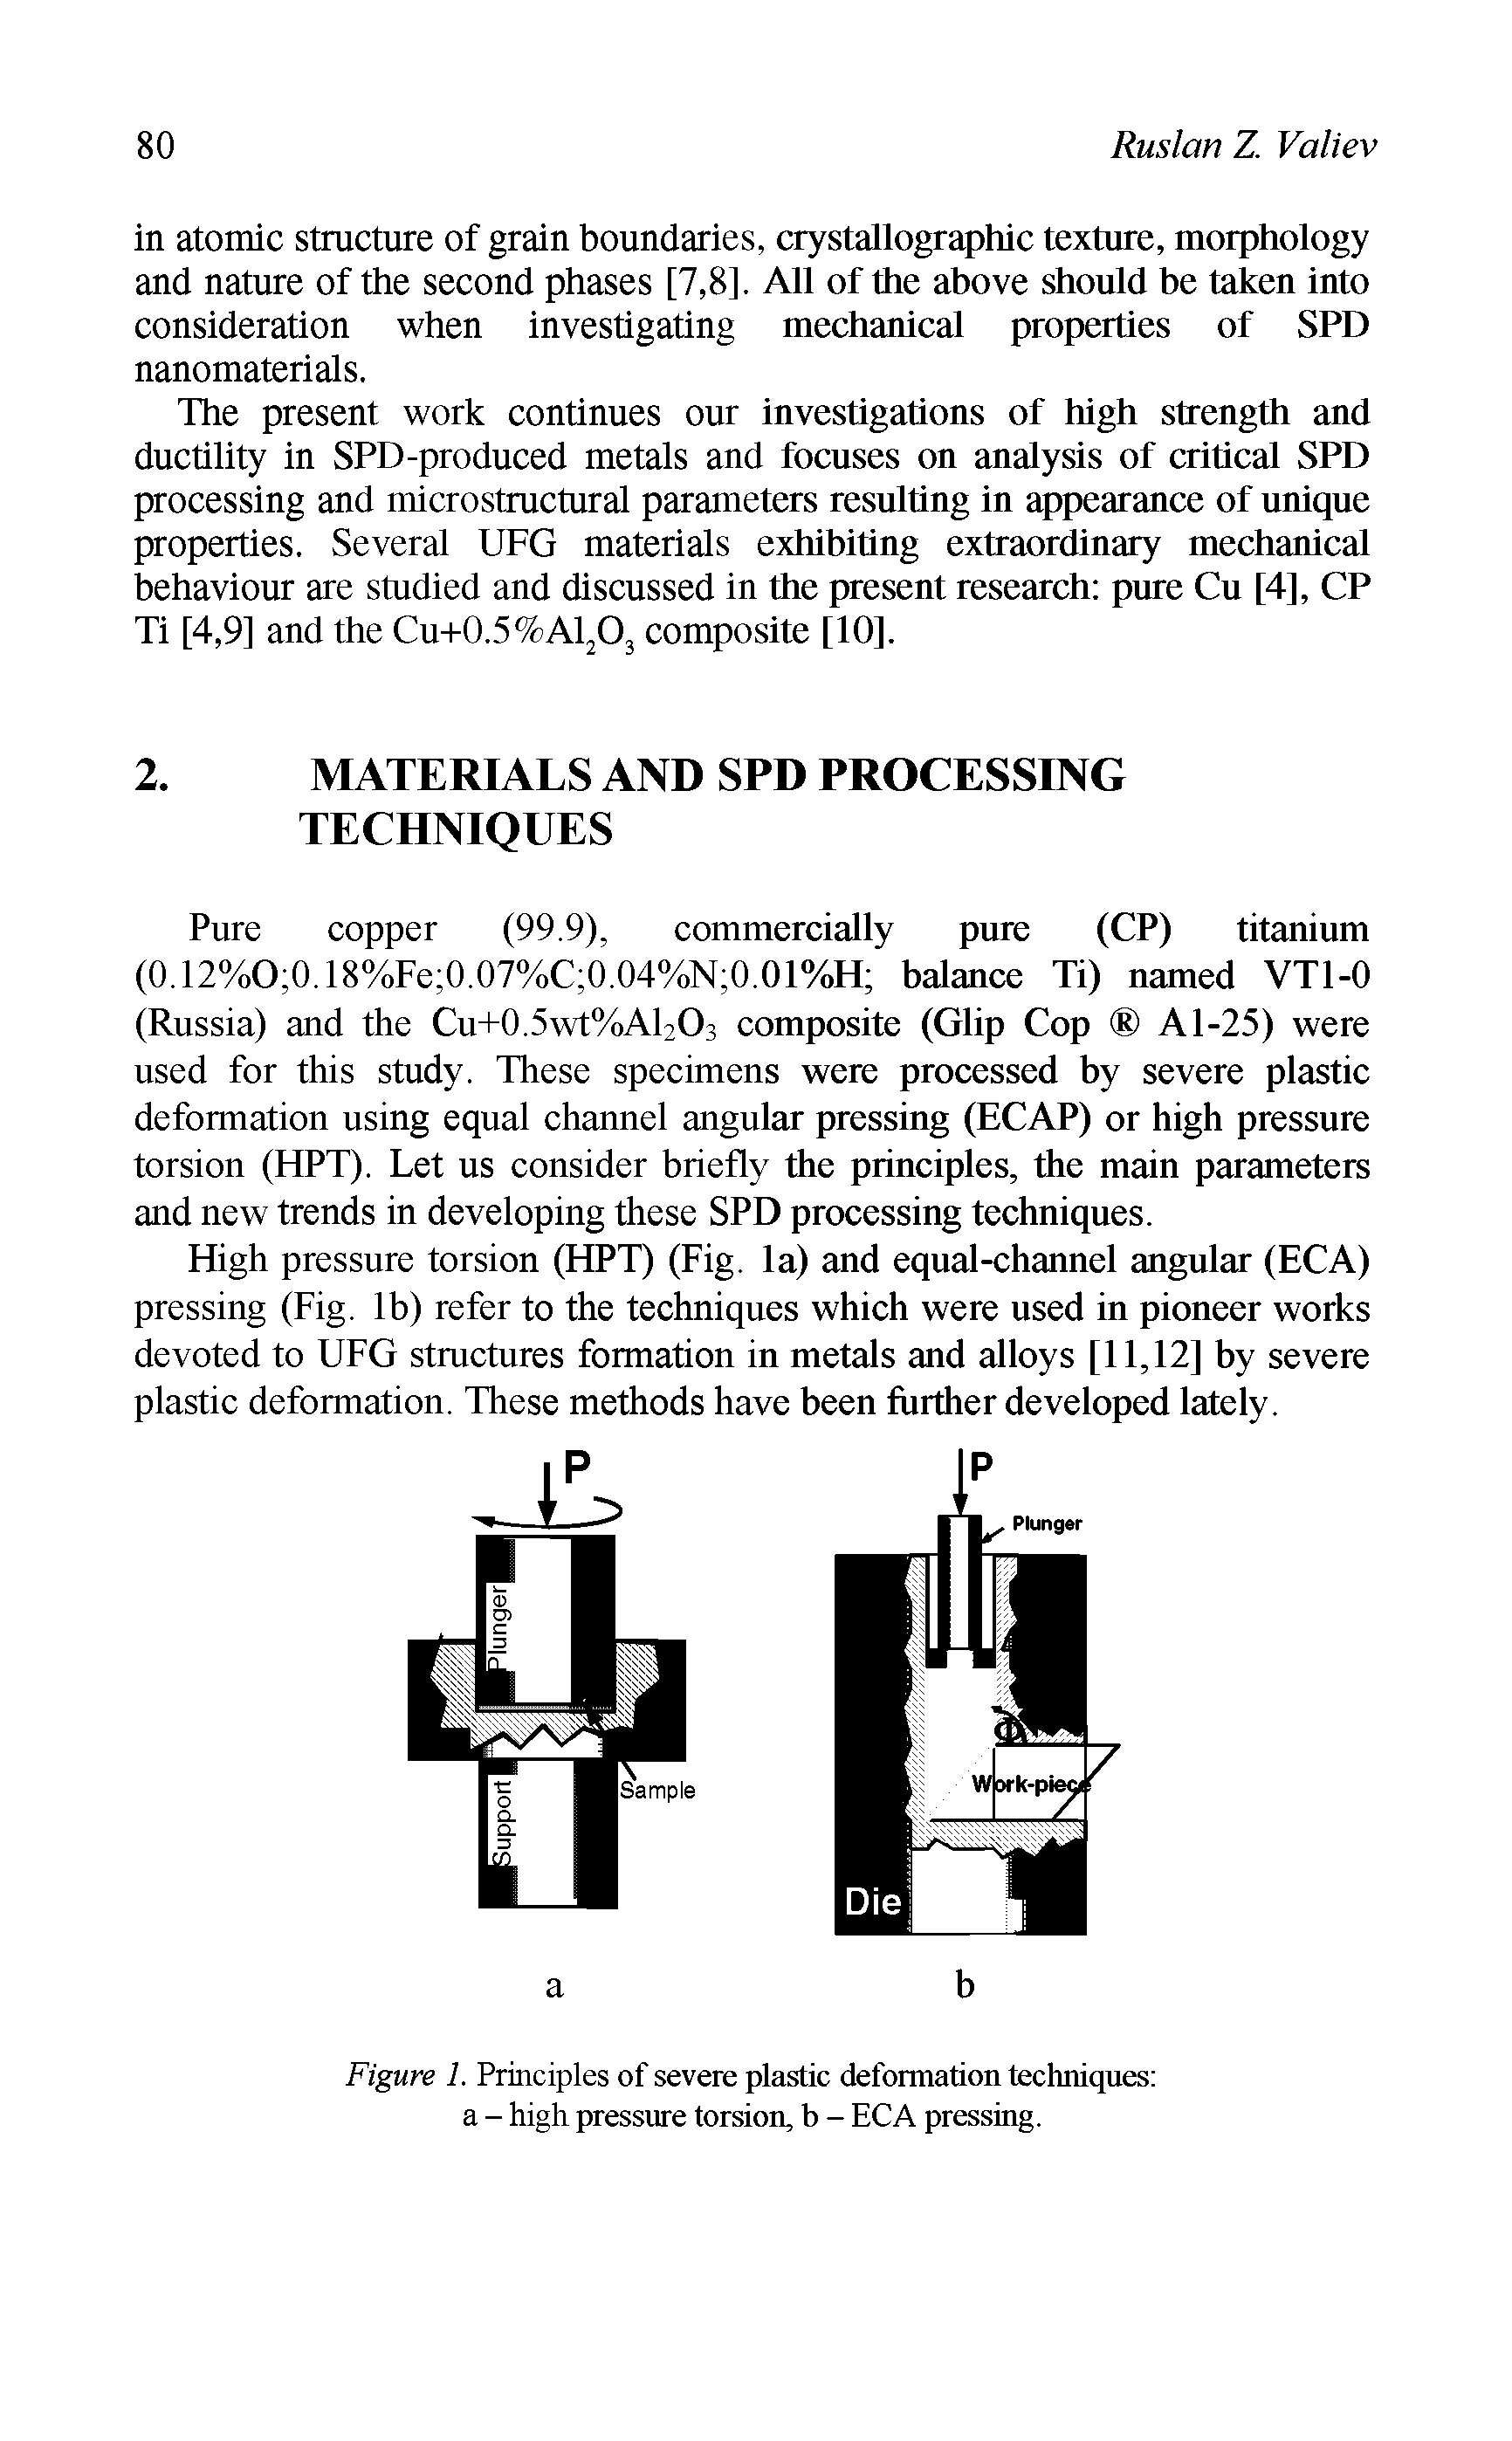 Figure 1. Principles of severe plastic deformation techniques a - high pressure torsion, b - ECA pressing.